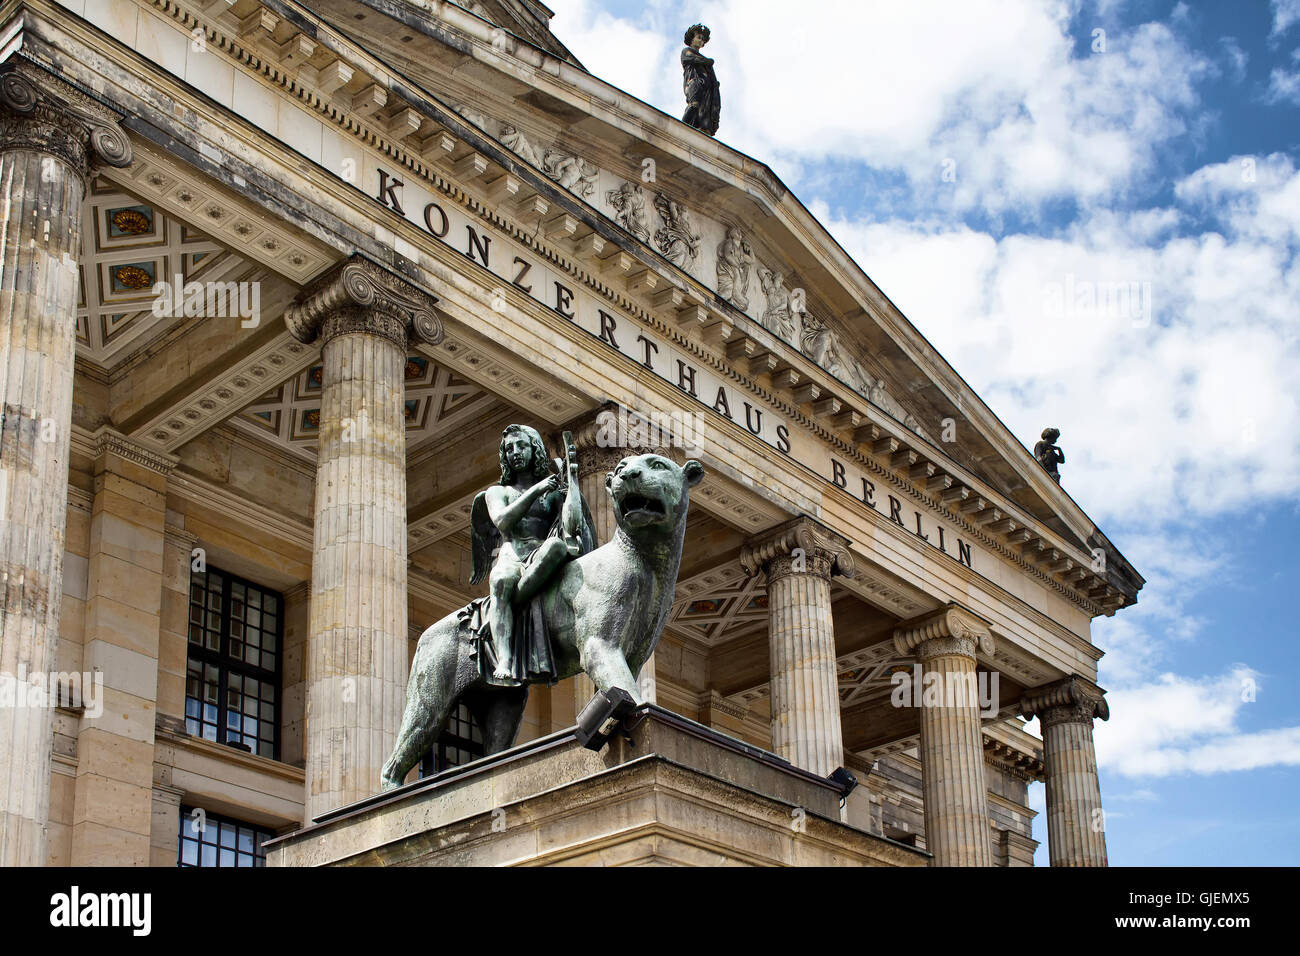 Statua che si trova nella parte anteriore del Konzerthaus (sala concerti) - Gendarmenmarkt Berlin Germania Foto Stock